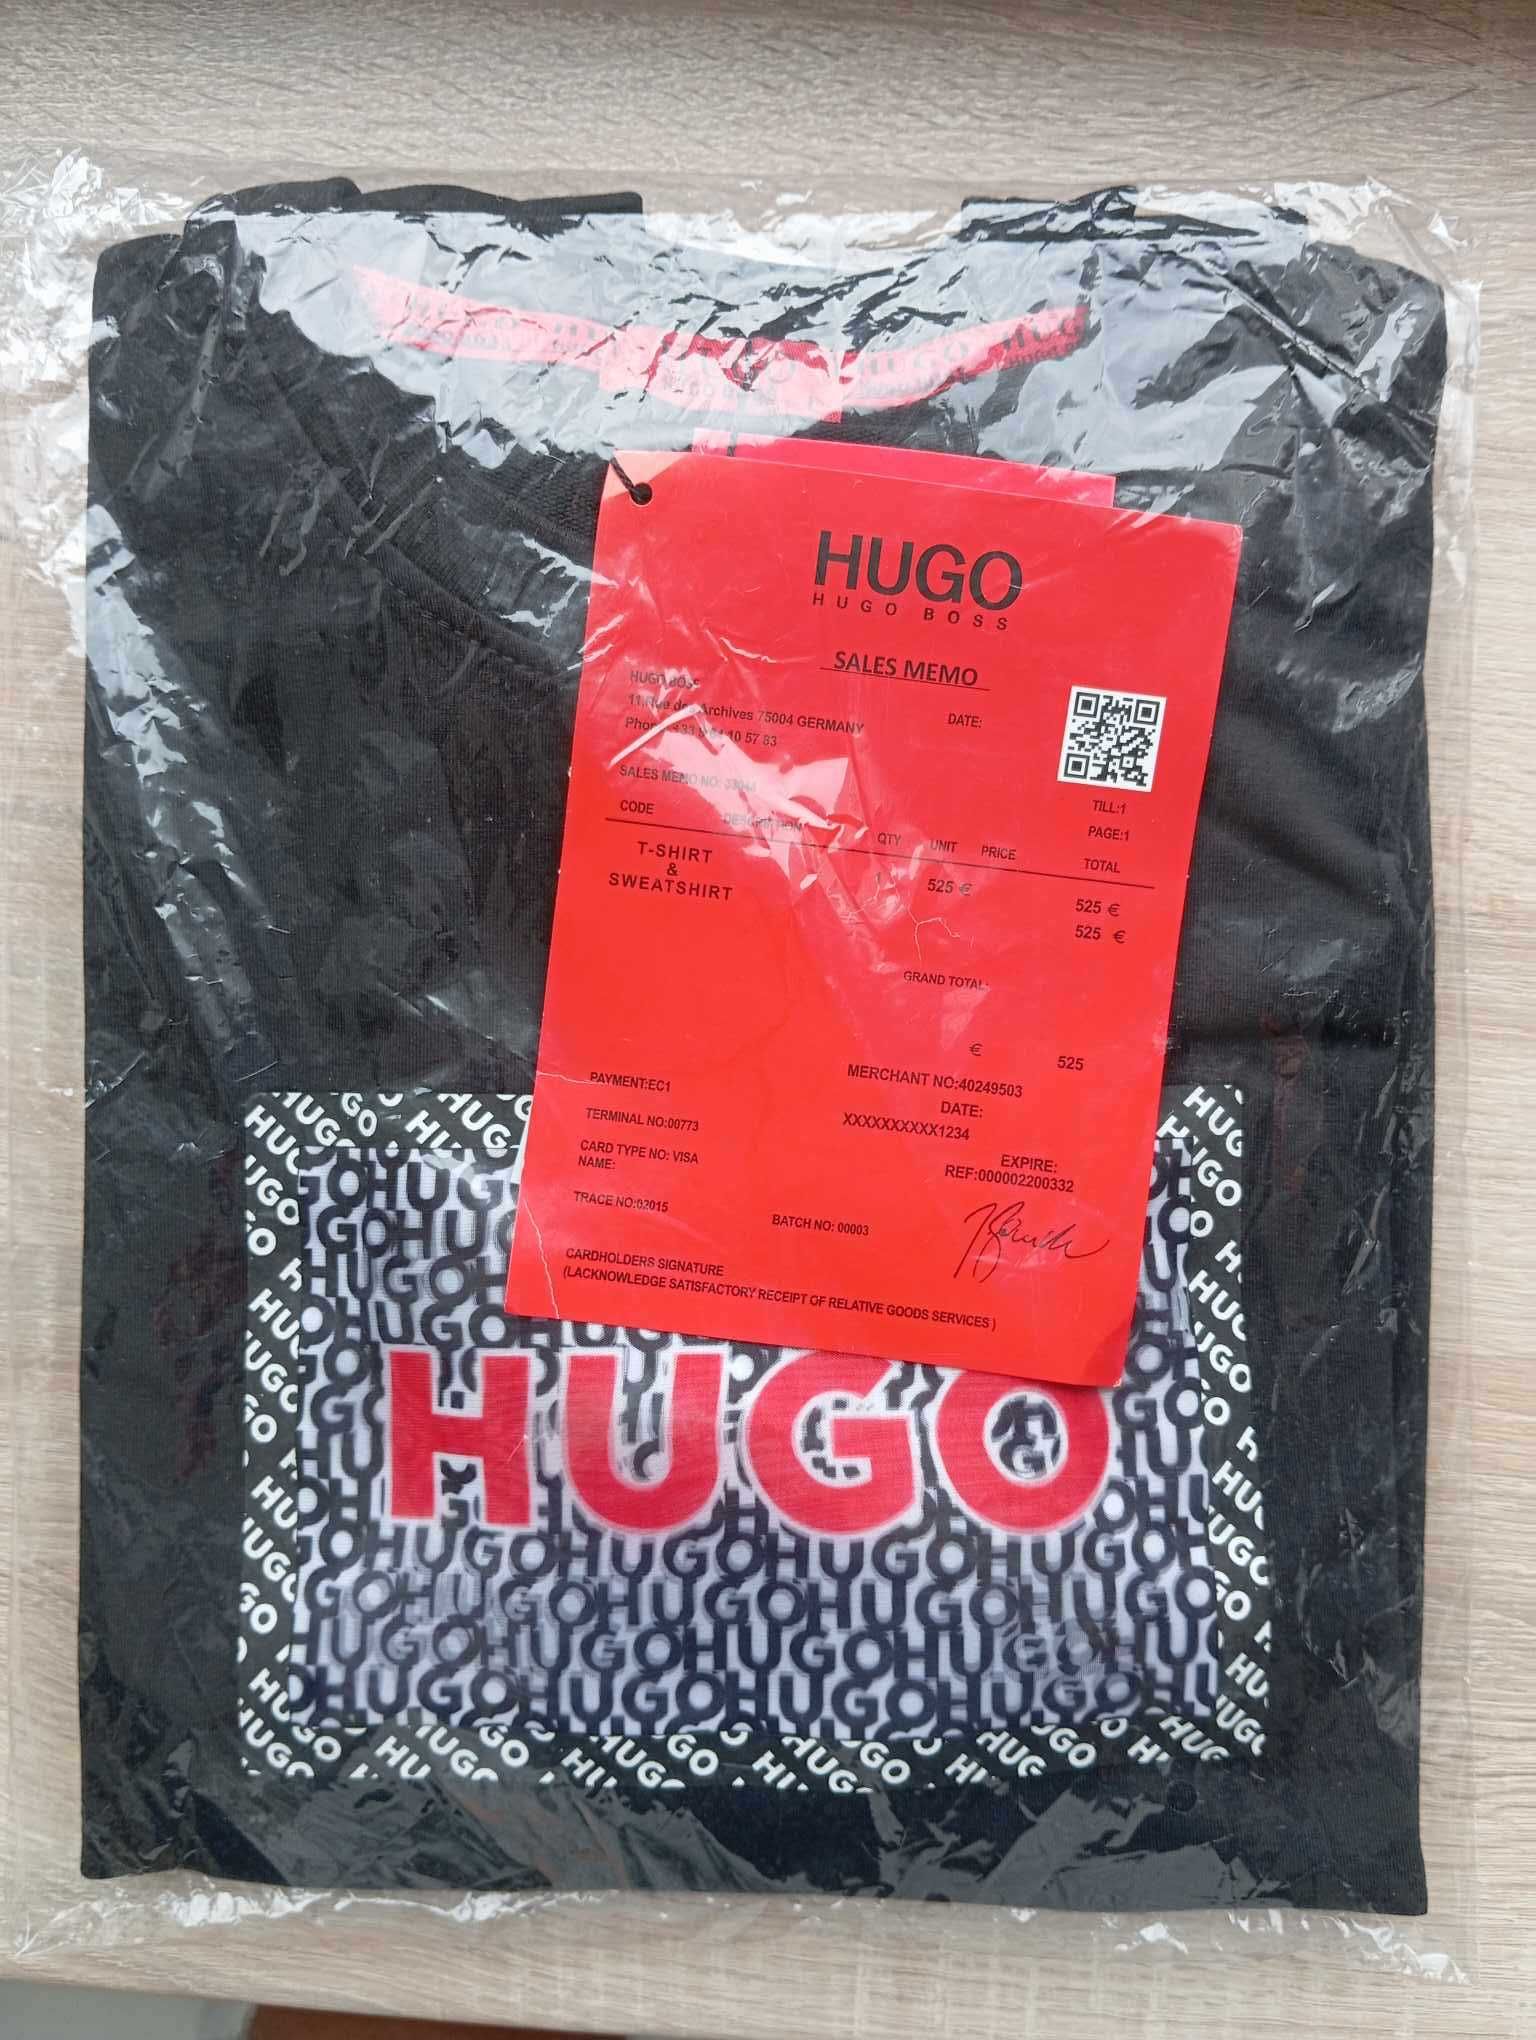 Bluza Hugo Boss, classic czarna L, nowoczesny fason, nowość!